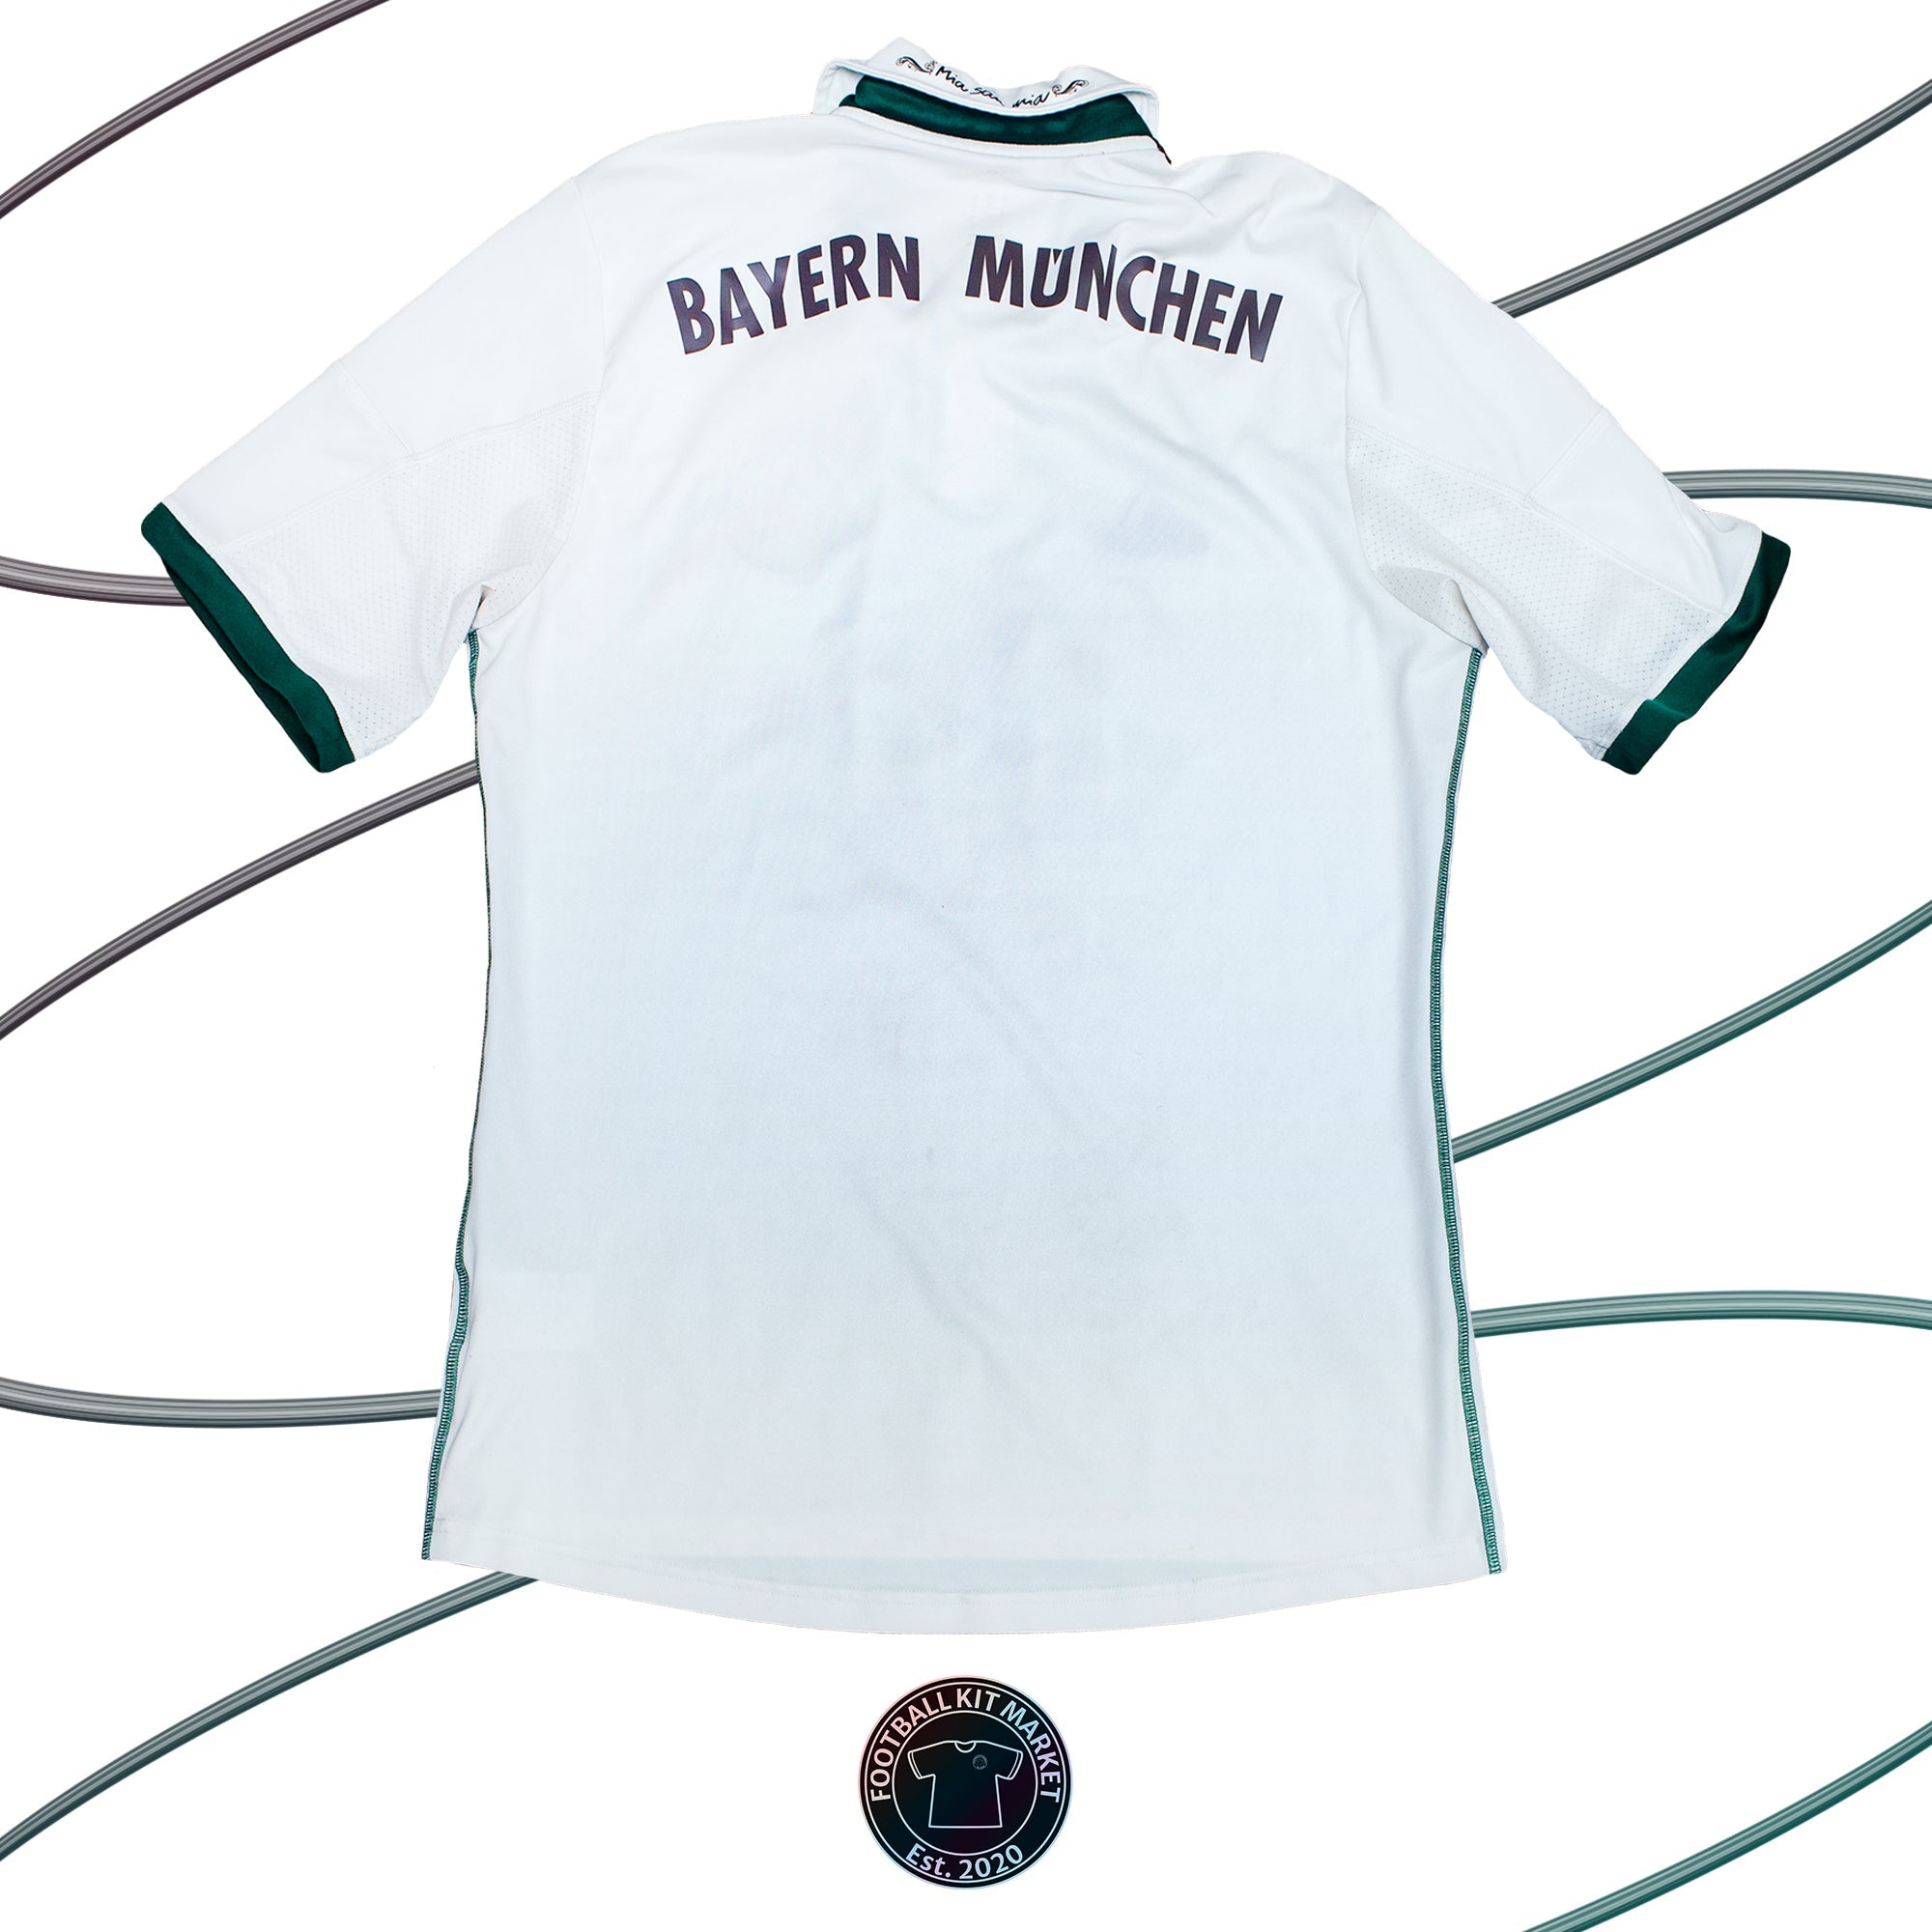 Genuine BAYERN MUNICH Away Shirt (2013-2014) - ADIDAS (M) - Product Image from Football Kit Market